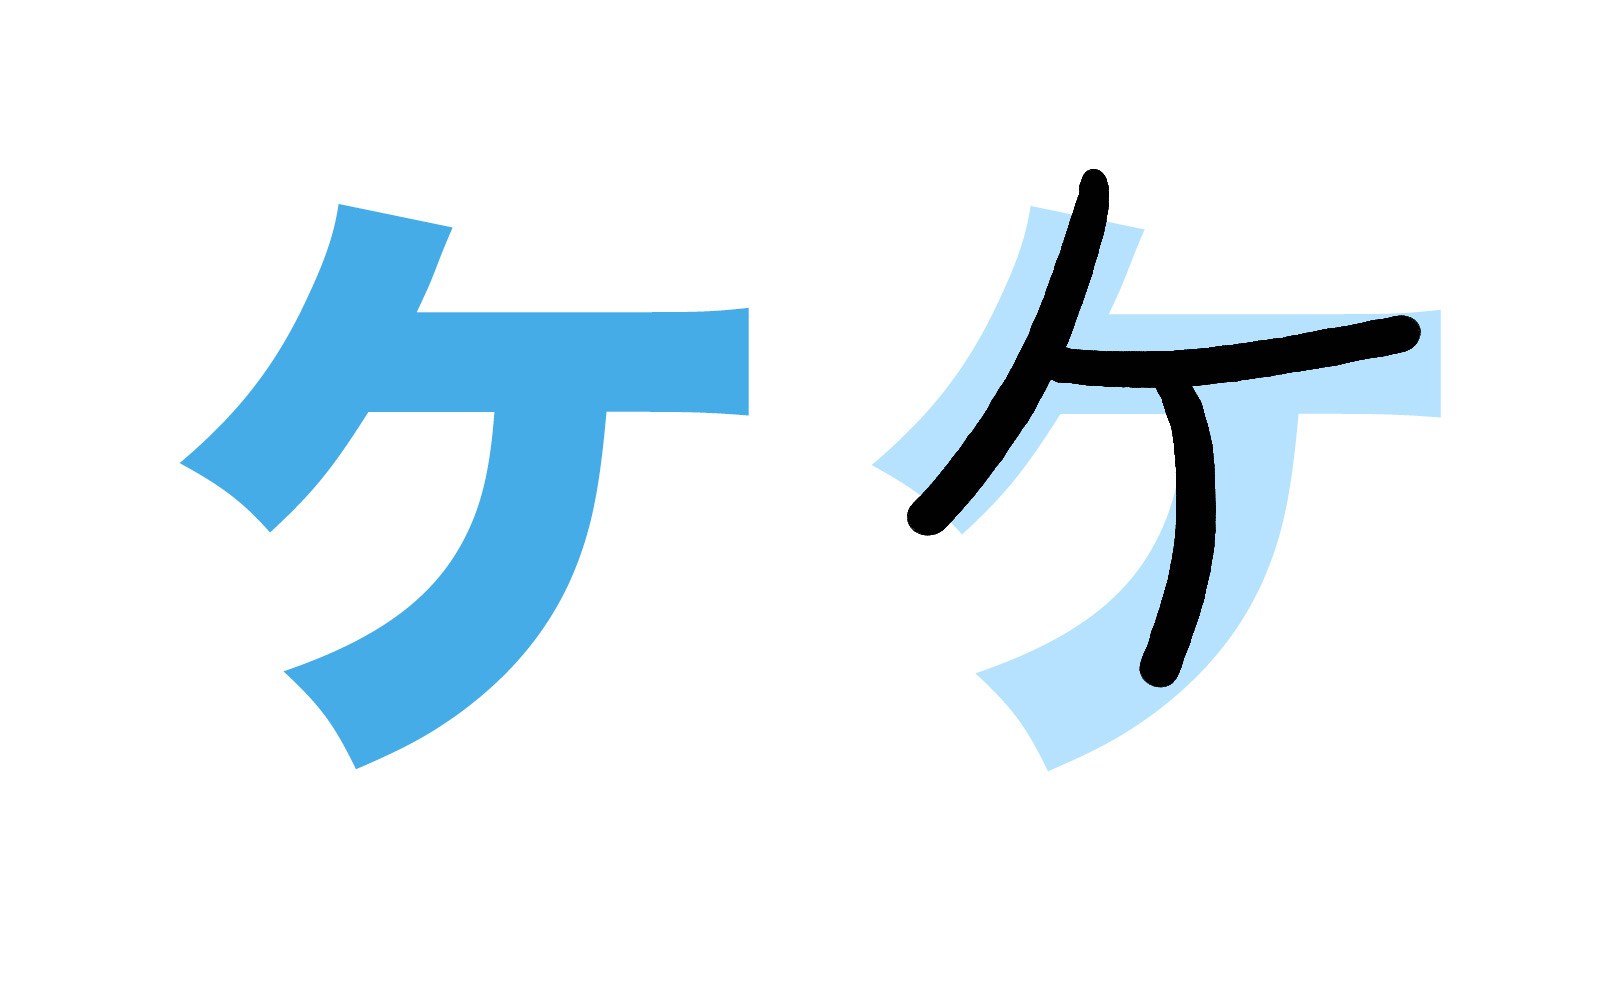 Katakana character ケ mnemonic